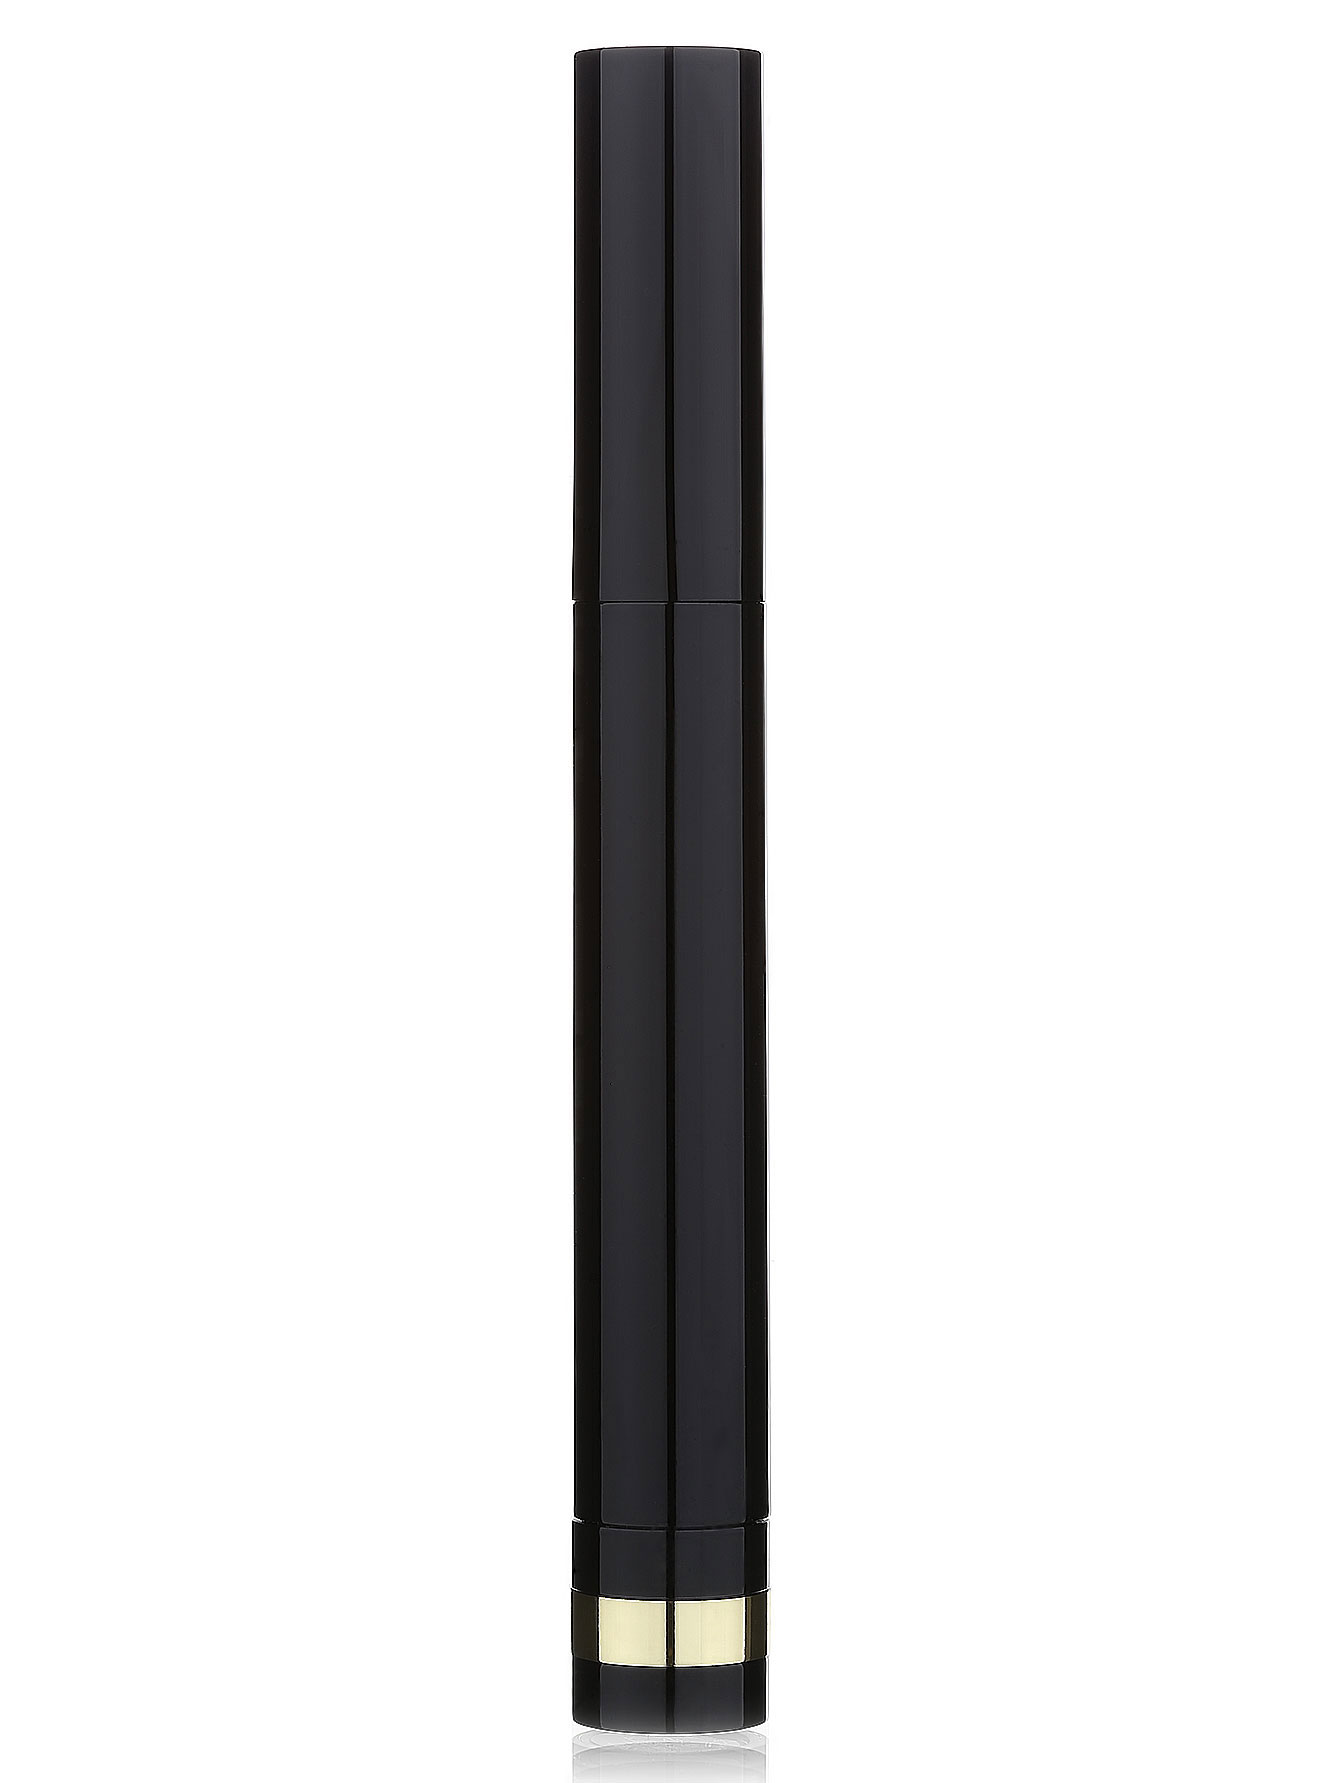  Губная помада - №240, Matte lipstick - Модель Верх-Низ